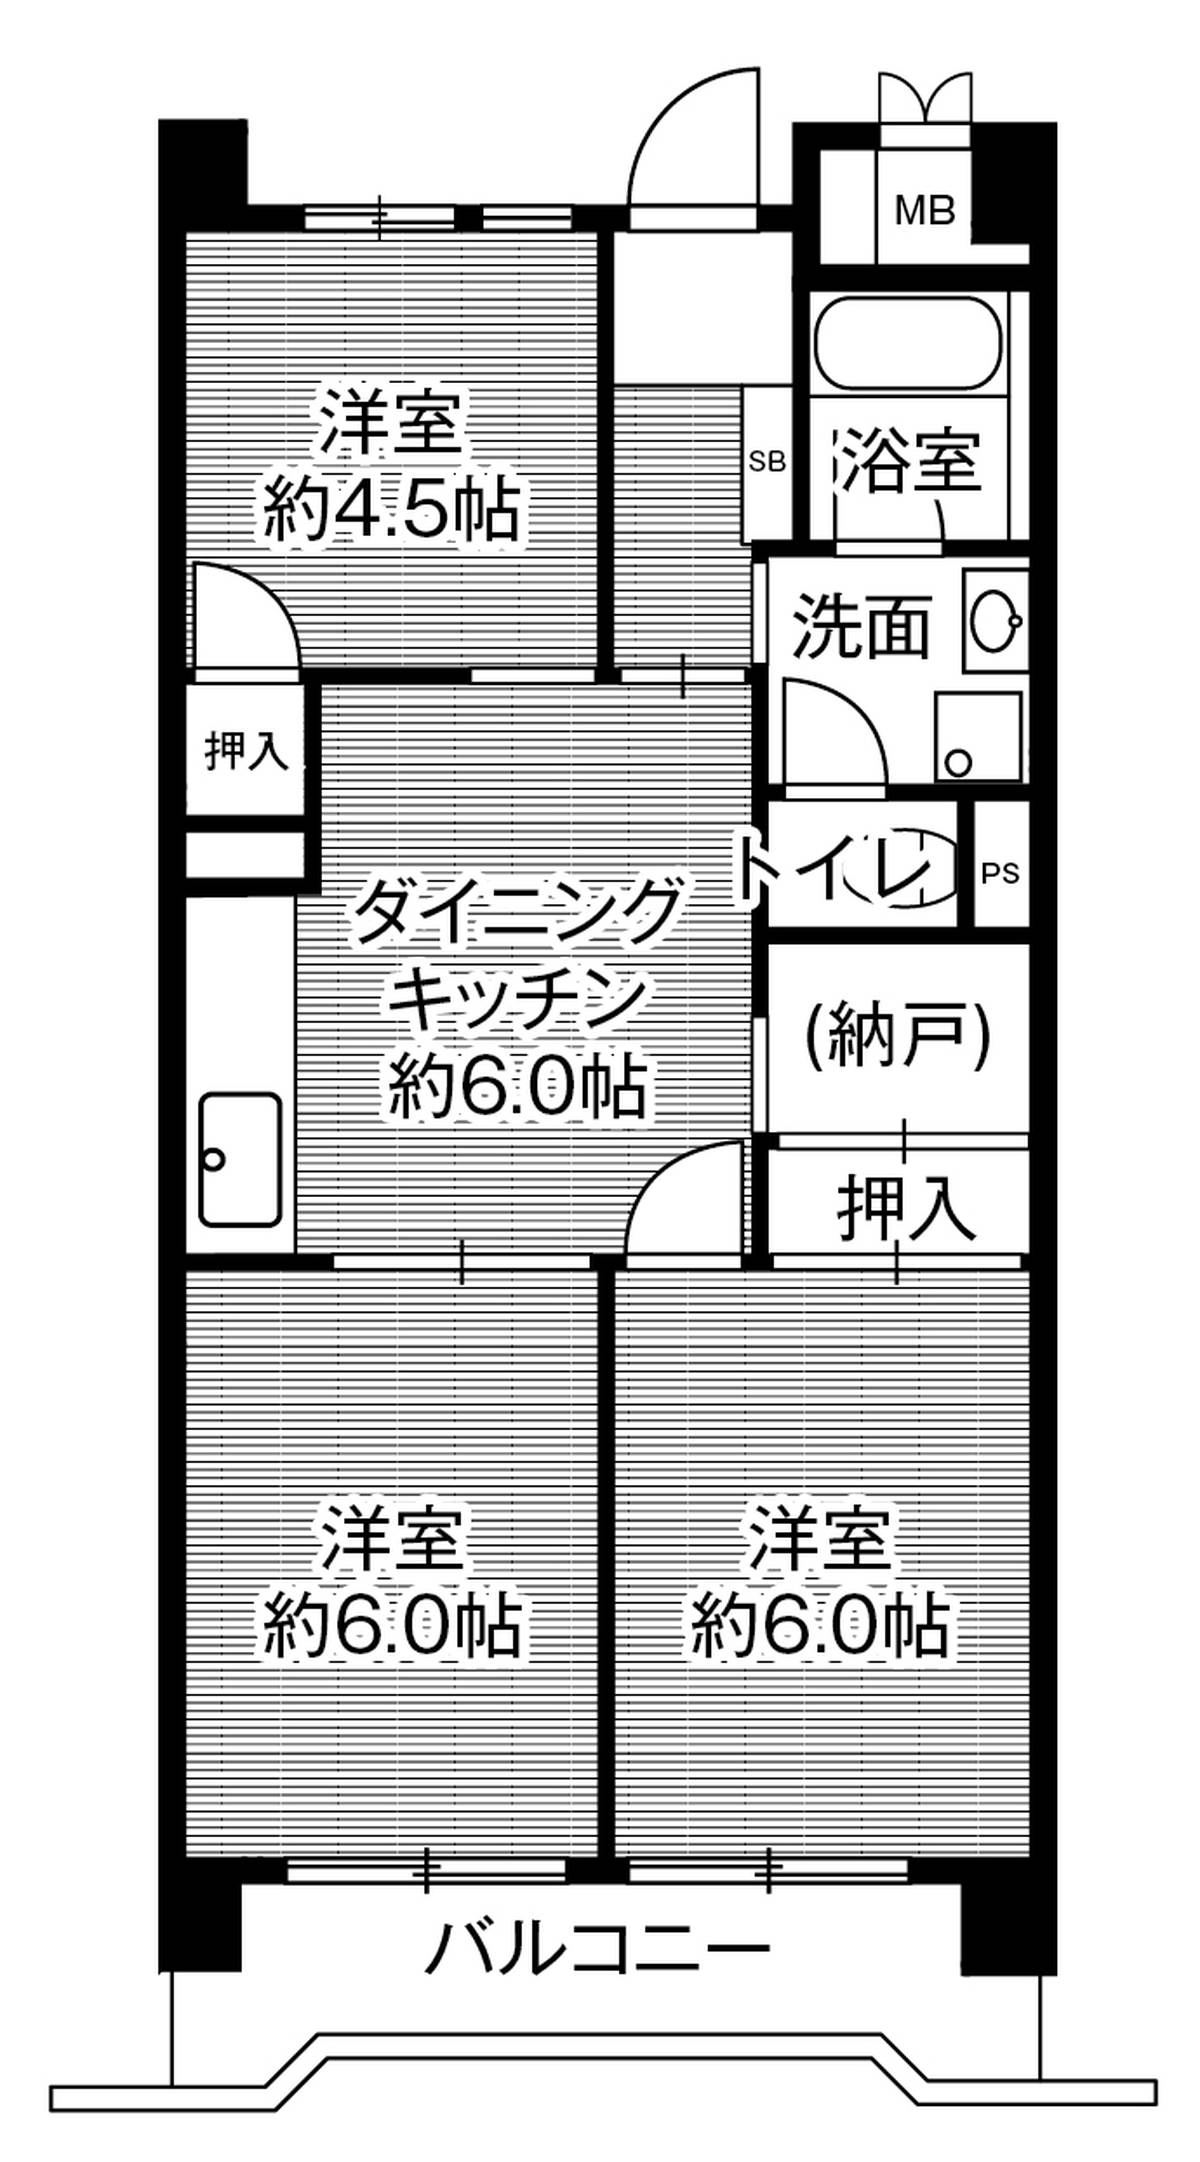 3DK floorplan of Village House Minatojima Tower in Chuo-ku